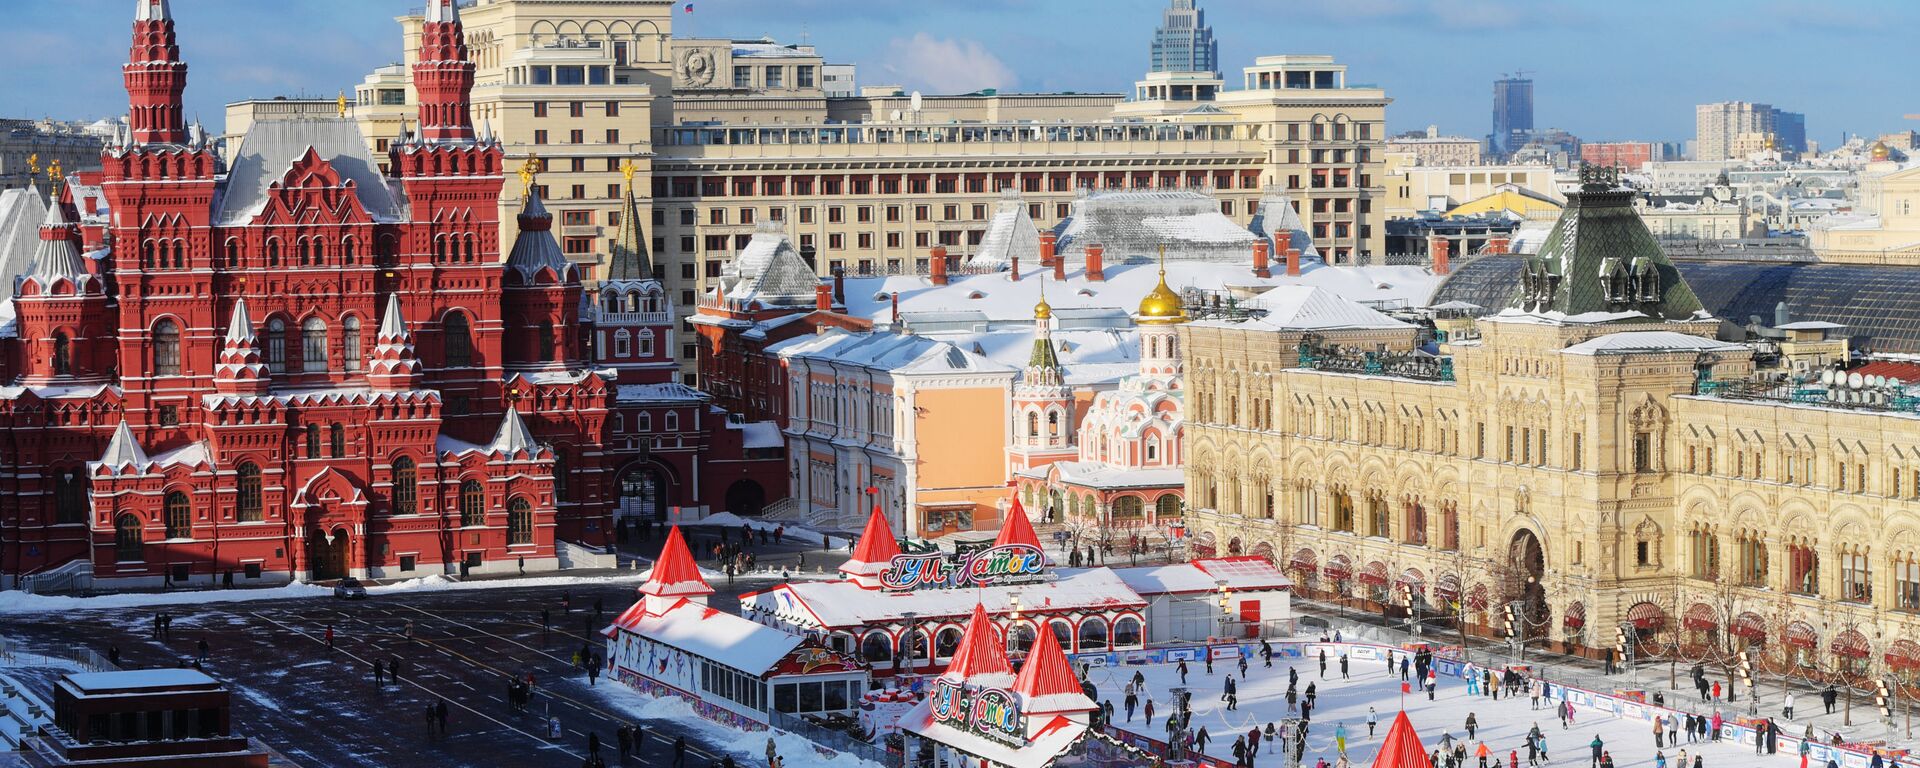 Красная площадь в Москве - Sputnik Latvija, 1920, 31.12.2018